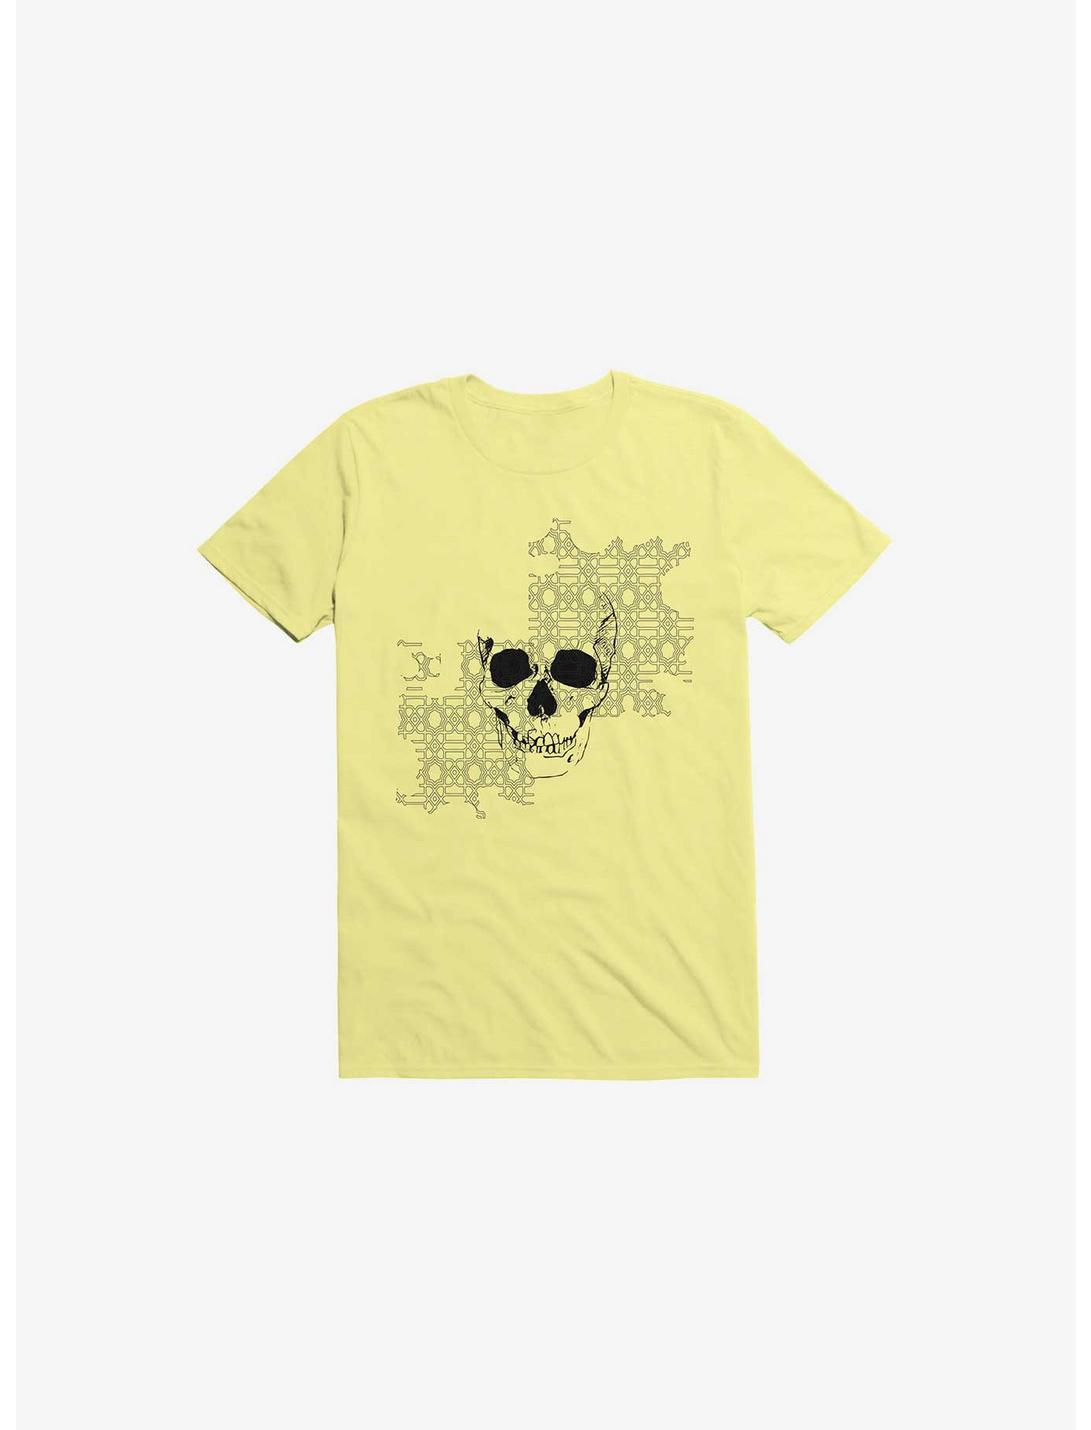 Old Bones! T-Shirt, YELLOW, hi-res